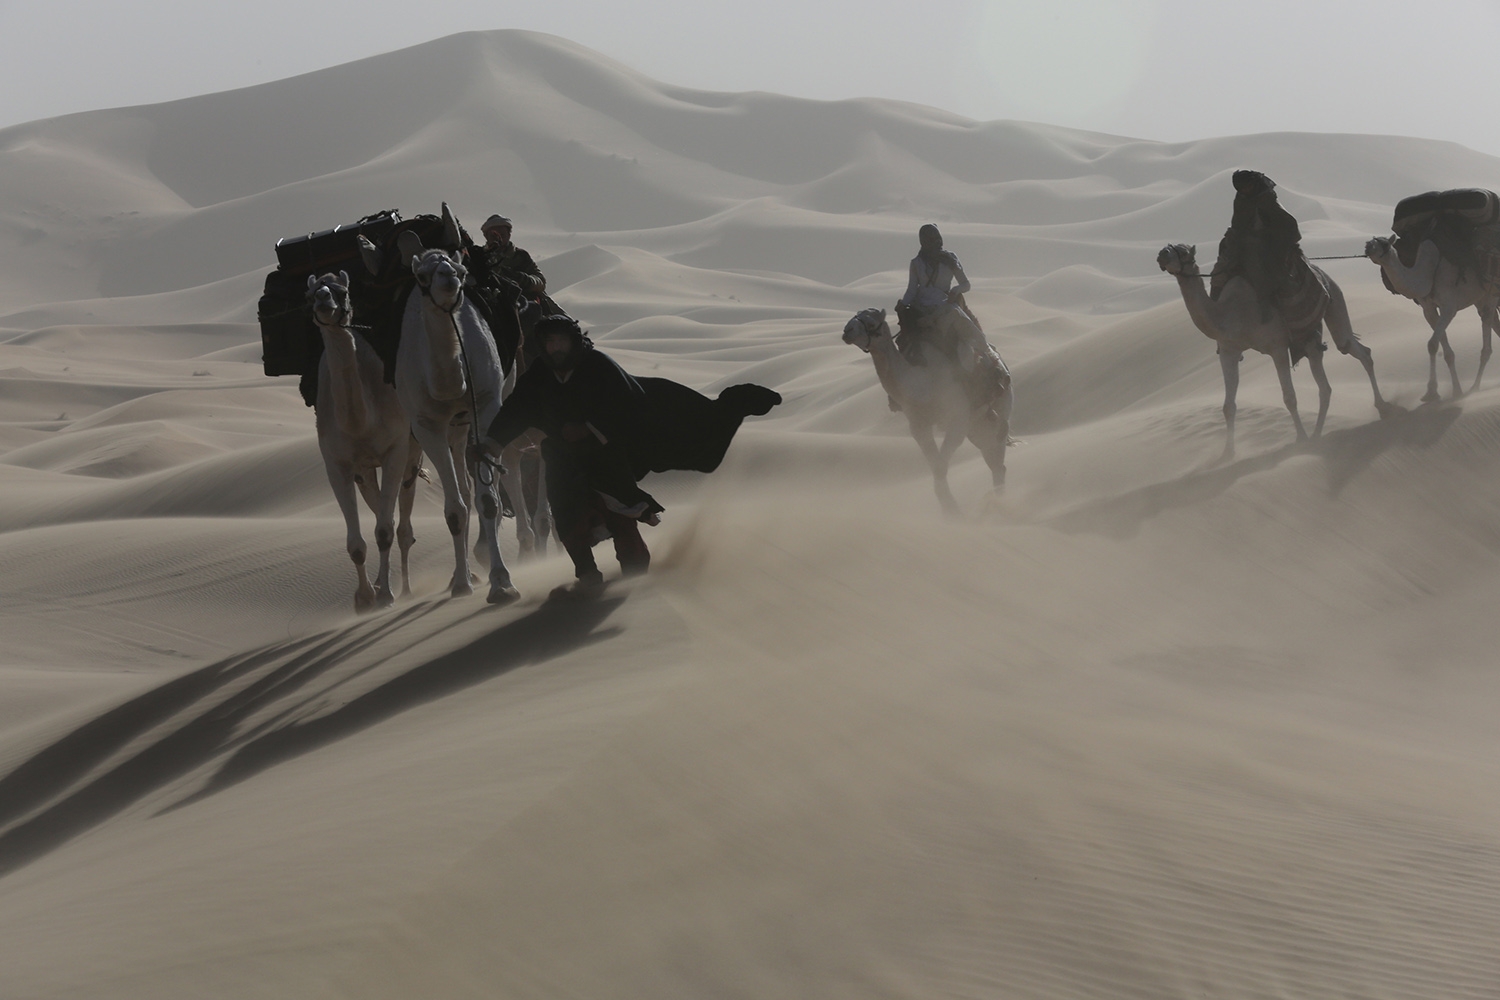 Eine Gruppe Menschen reitet auf Kamelen während eines Sandstrums zwischen Dünen in der Wüste.